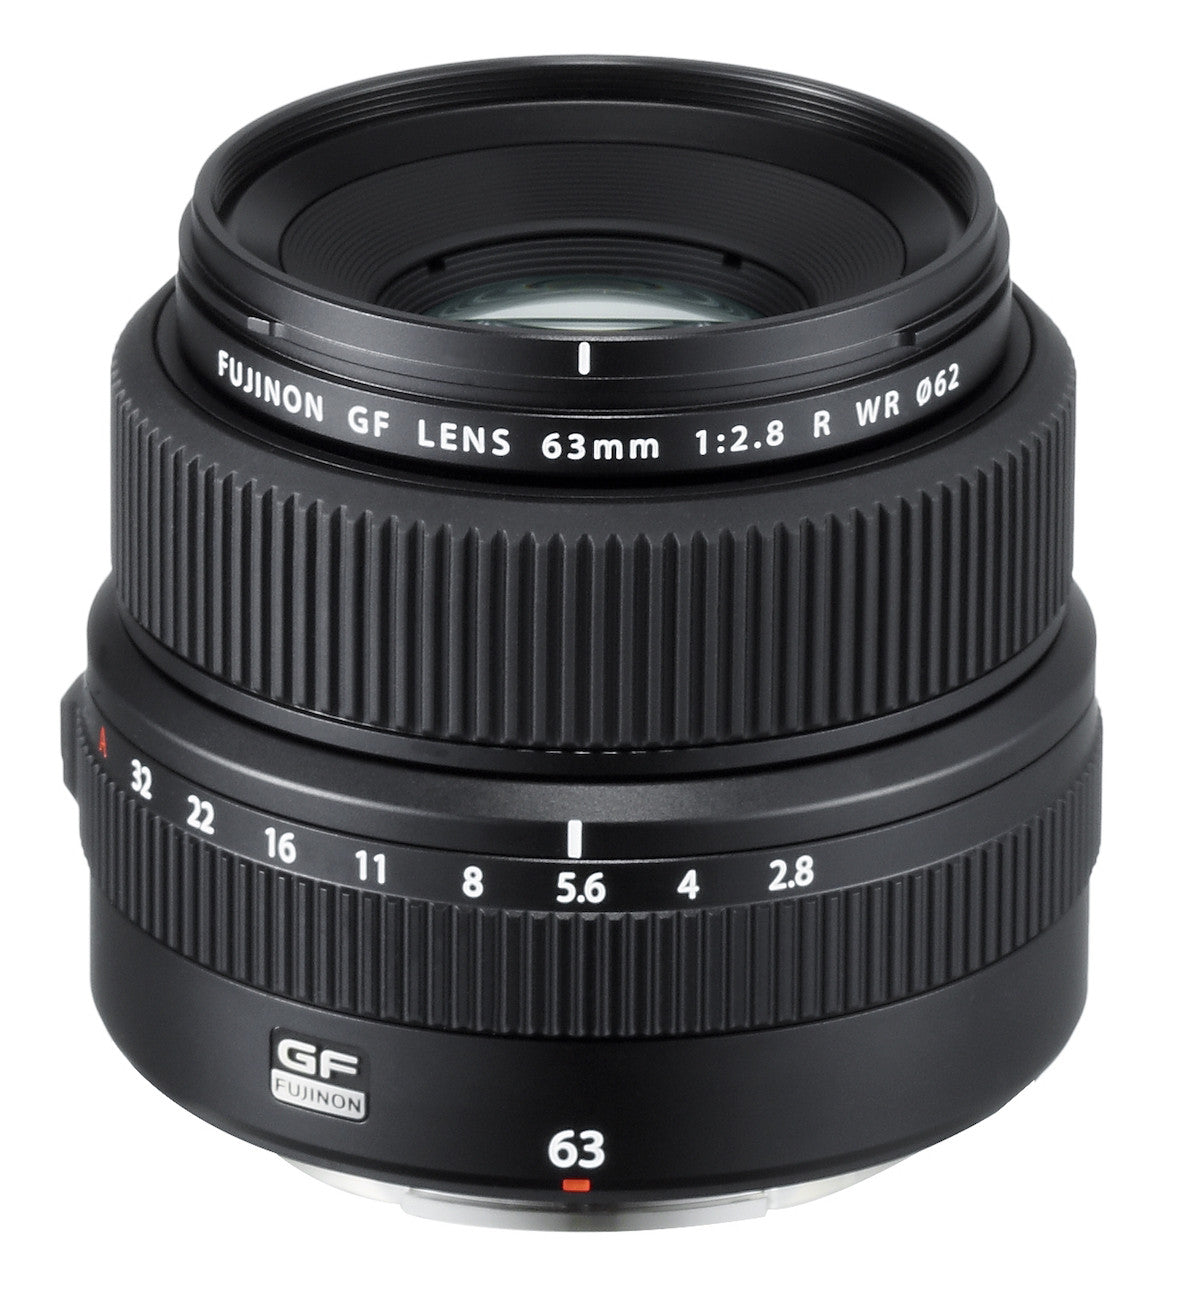 Fujifilm GF 63mm f2.8 R WR Lens, lenses medium format, Fujifilm - Pictureline 